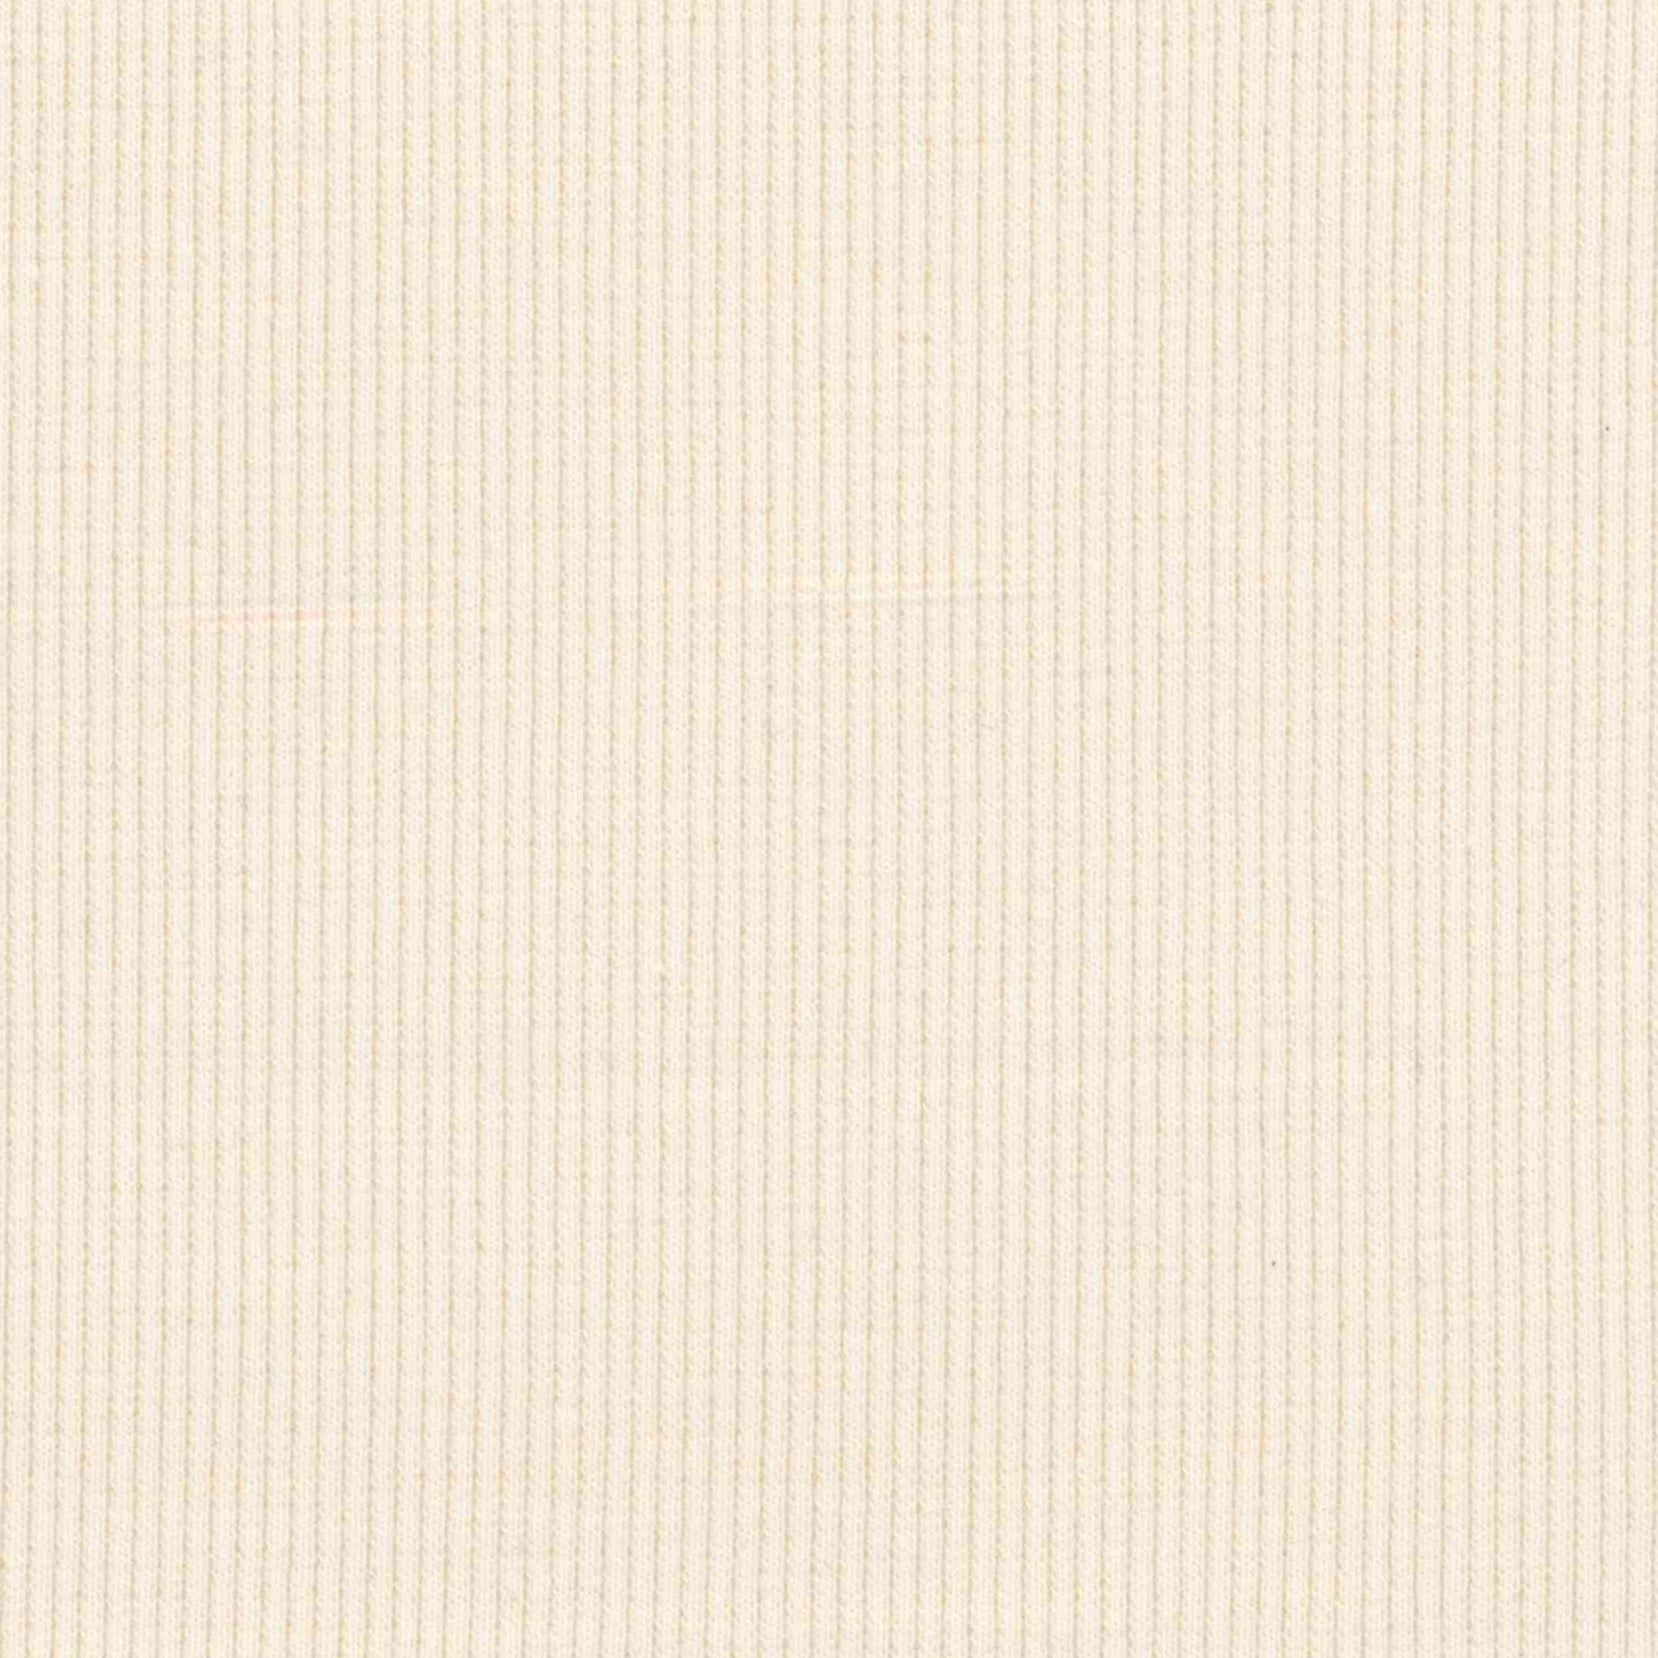 95% Organic Cotton - 5% Elastane Rib Knit - Ivory (2RB172)